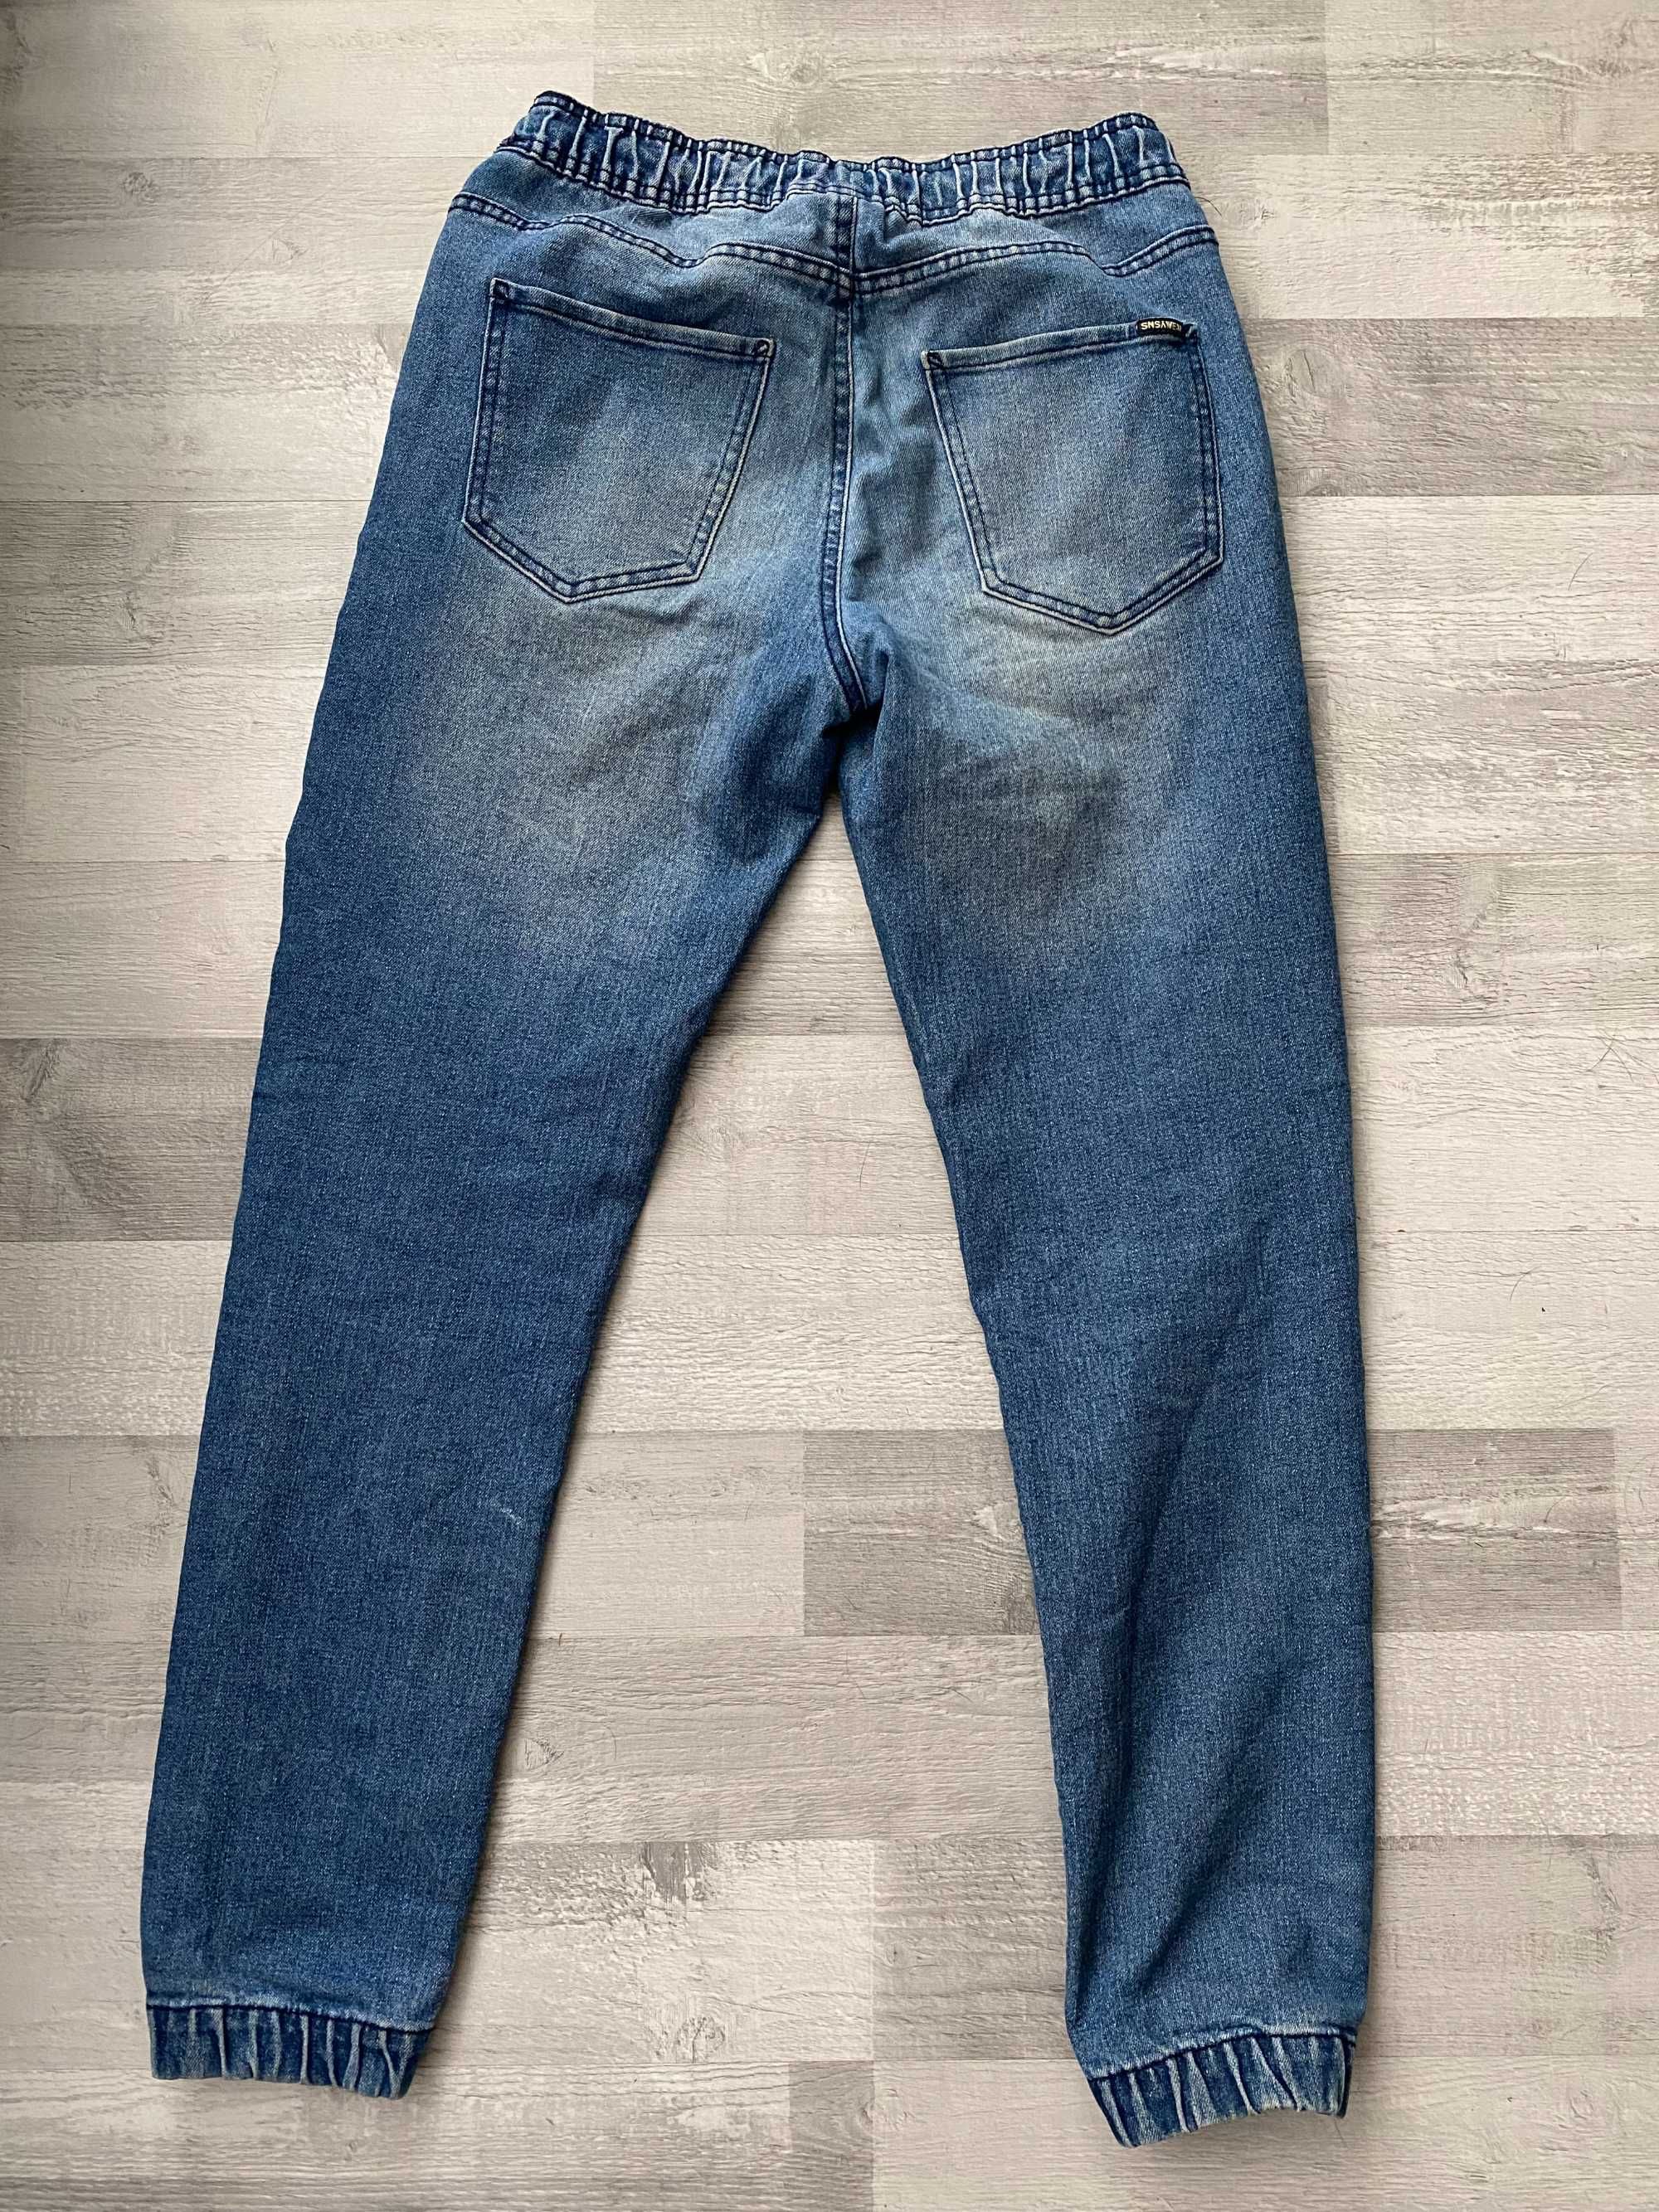 Spodnie męskie dżinsy jeansy 28 ze sznurkiem wiązane dżinsowe ściągane